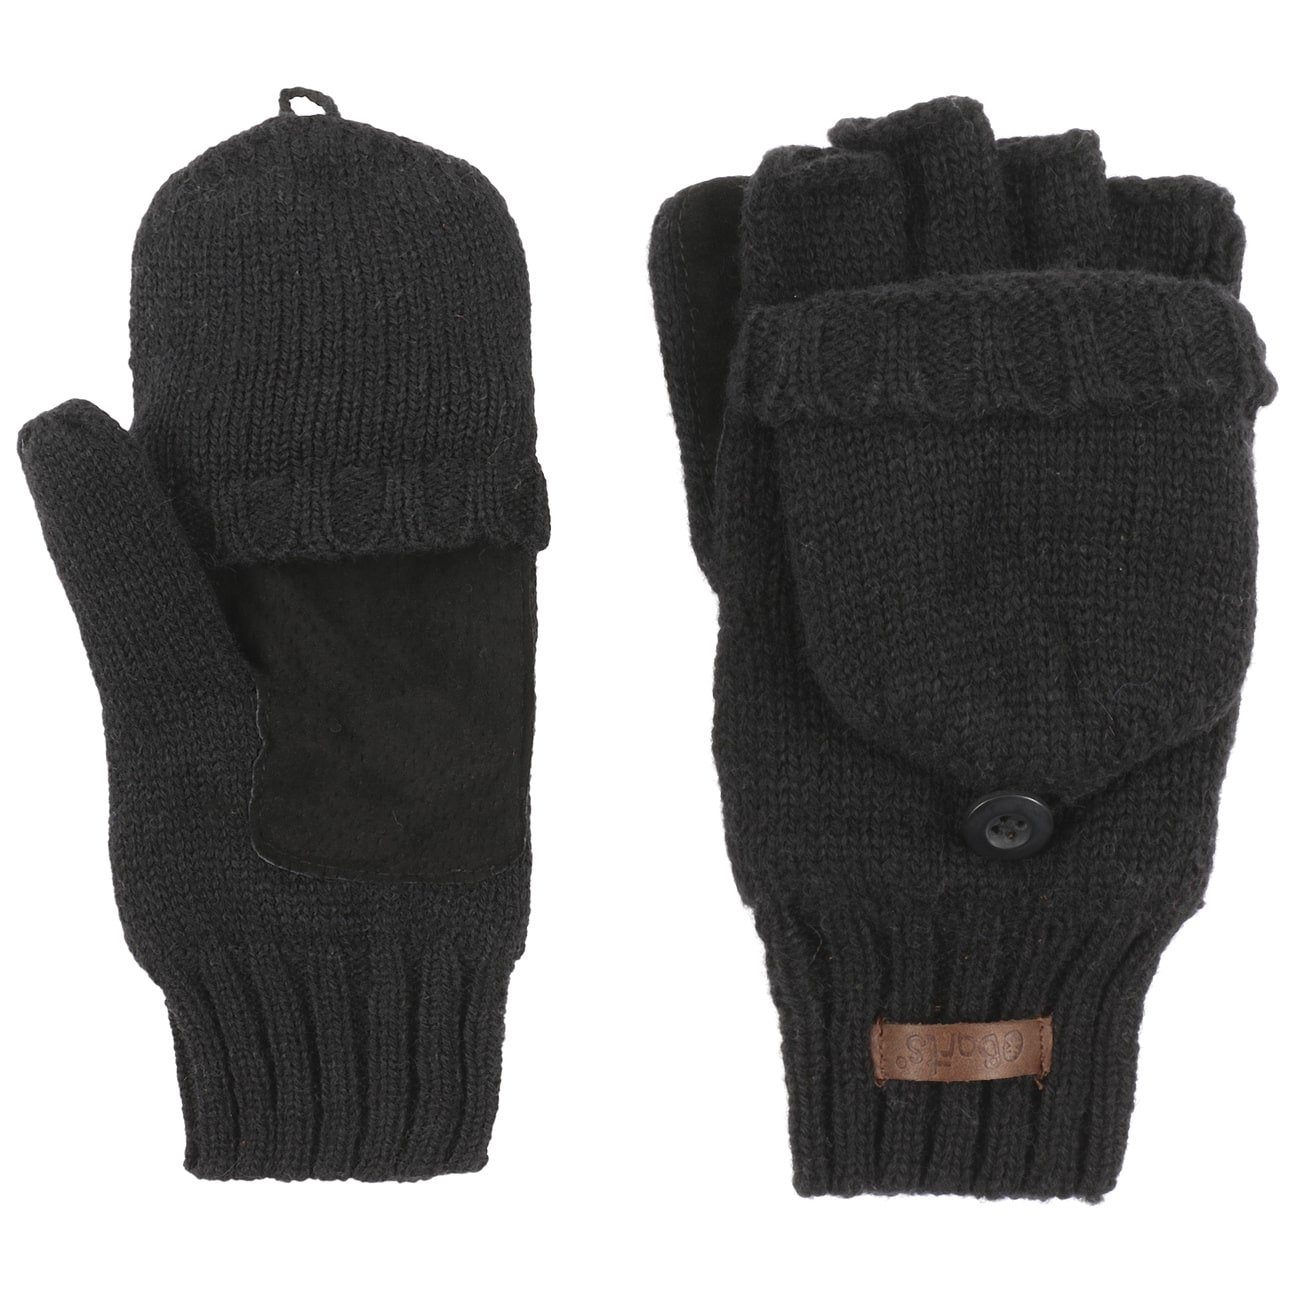 Barts Strickhandschuhe fingerlose Handschuhe mit Futter online kaufen | OTTO